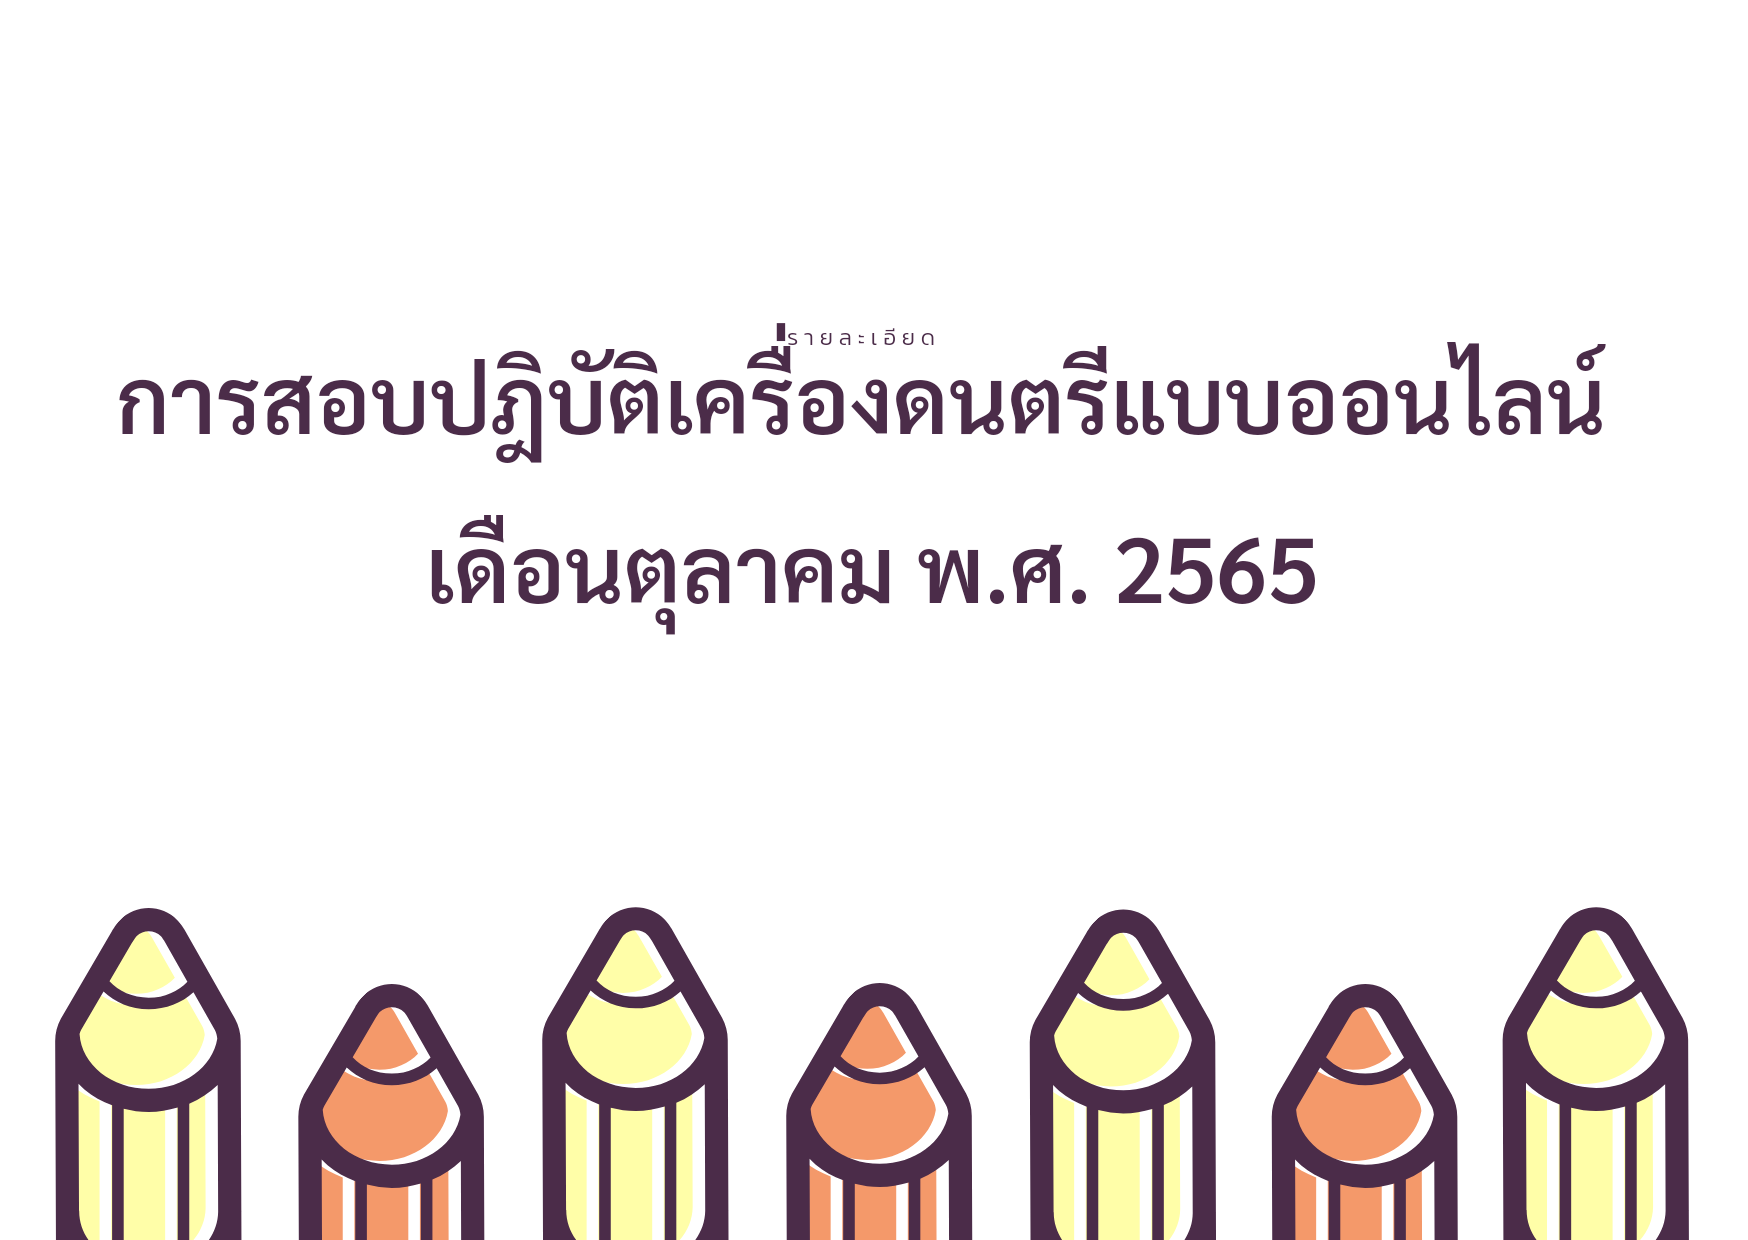 การสอบออนไลน์ภาคปฎิบัติเครื่อง ดนตรีไทย "ขิม ซอด้วง ซออู้" เดือนตุลาคม พ.ศ.2565